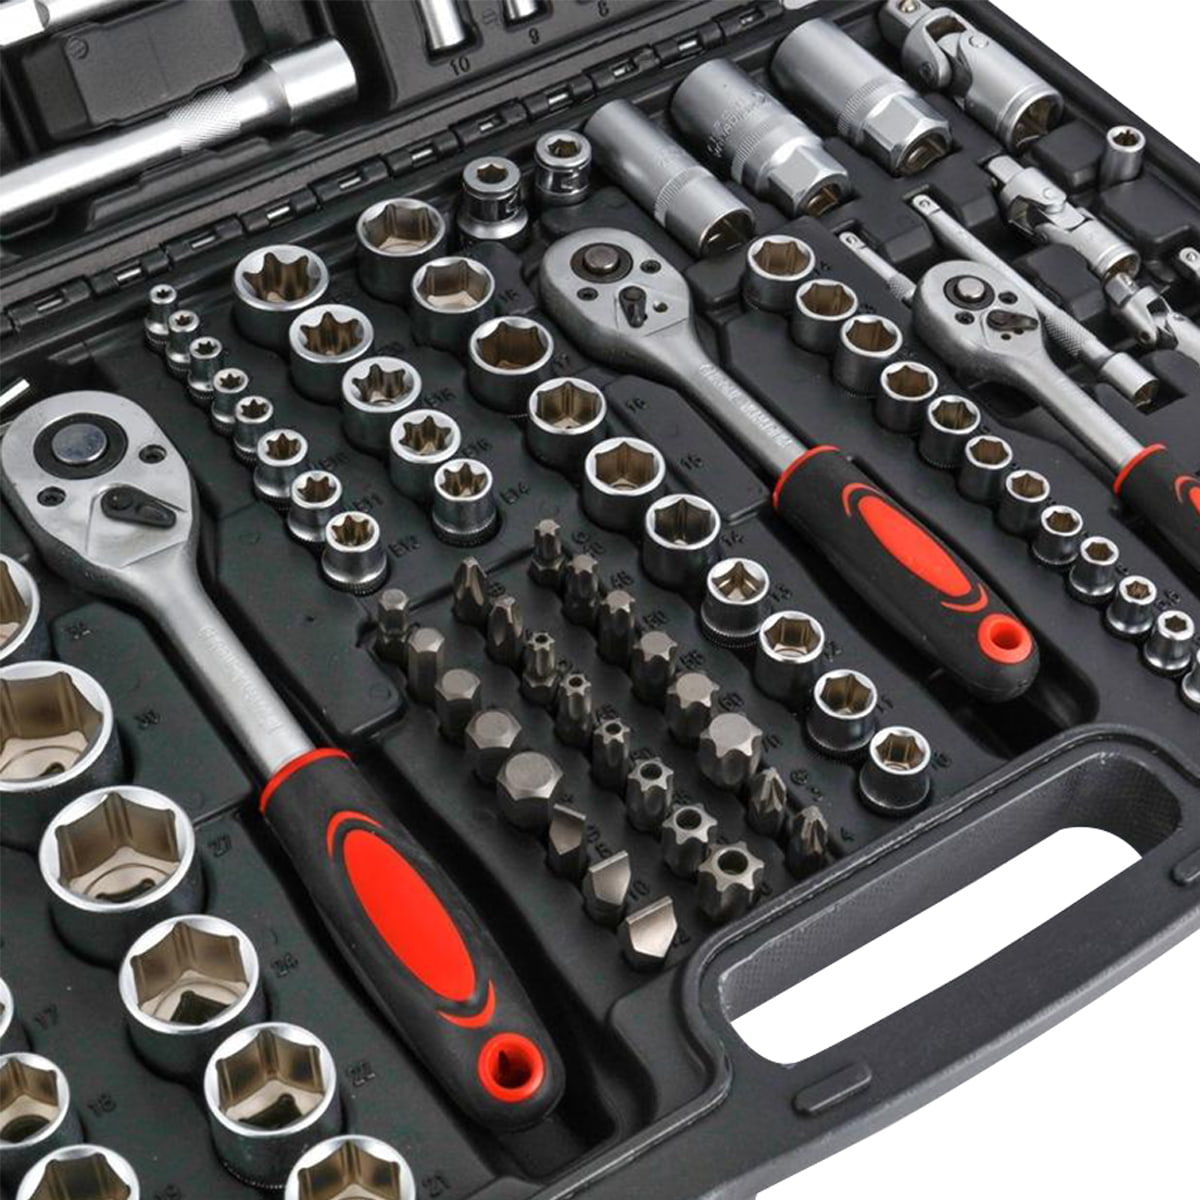 171-teiliger professioneller Multifunktionsschlüssel-Werkzeug-Maulschlüssel-Steckschlüsselsatz für die Autoreparatur